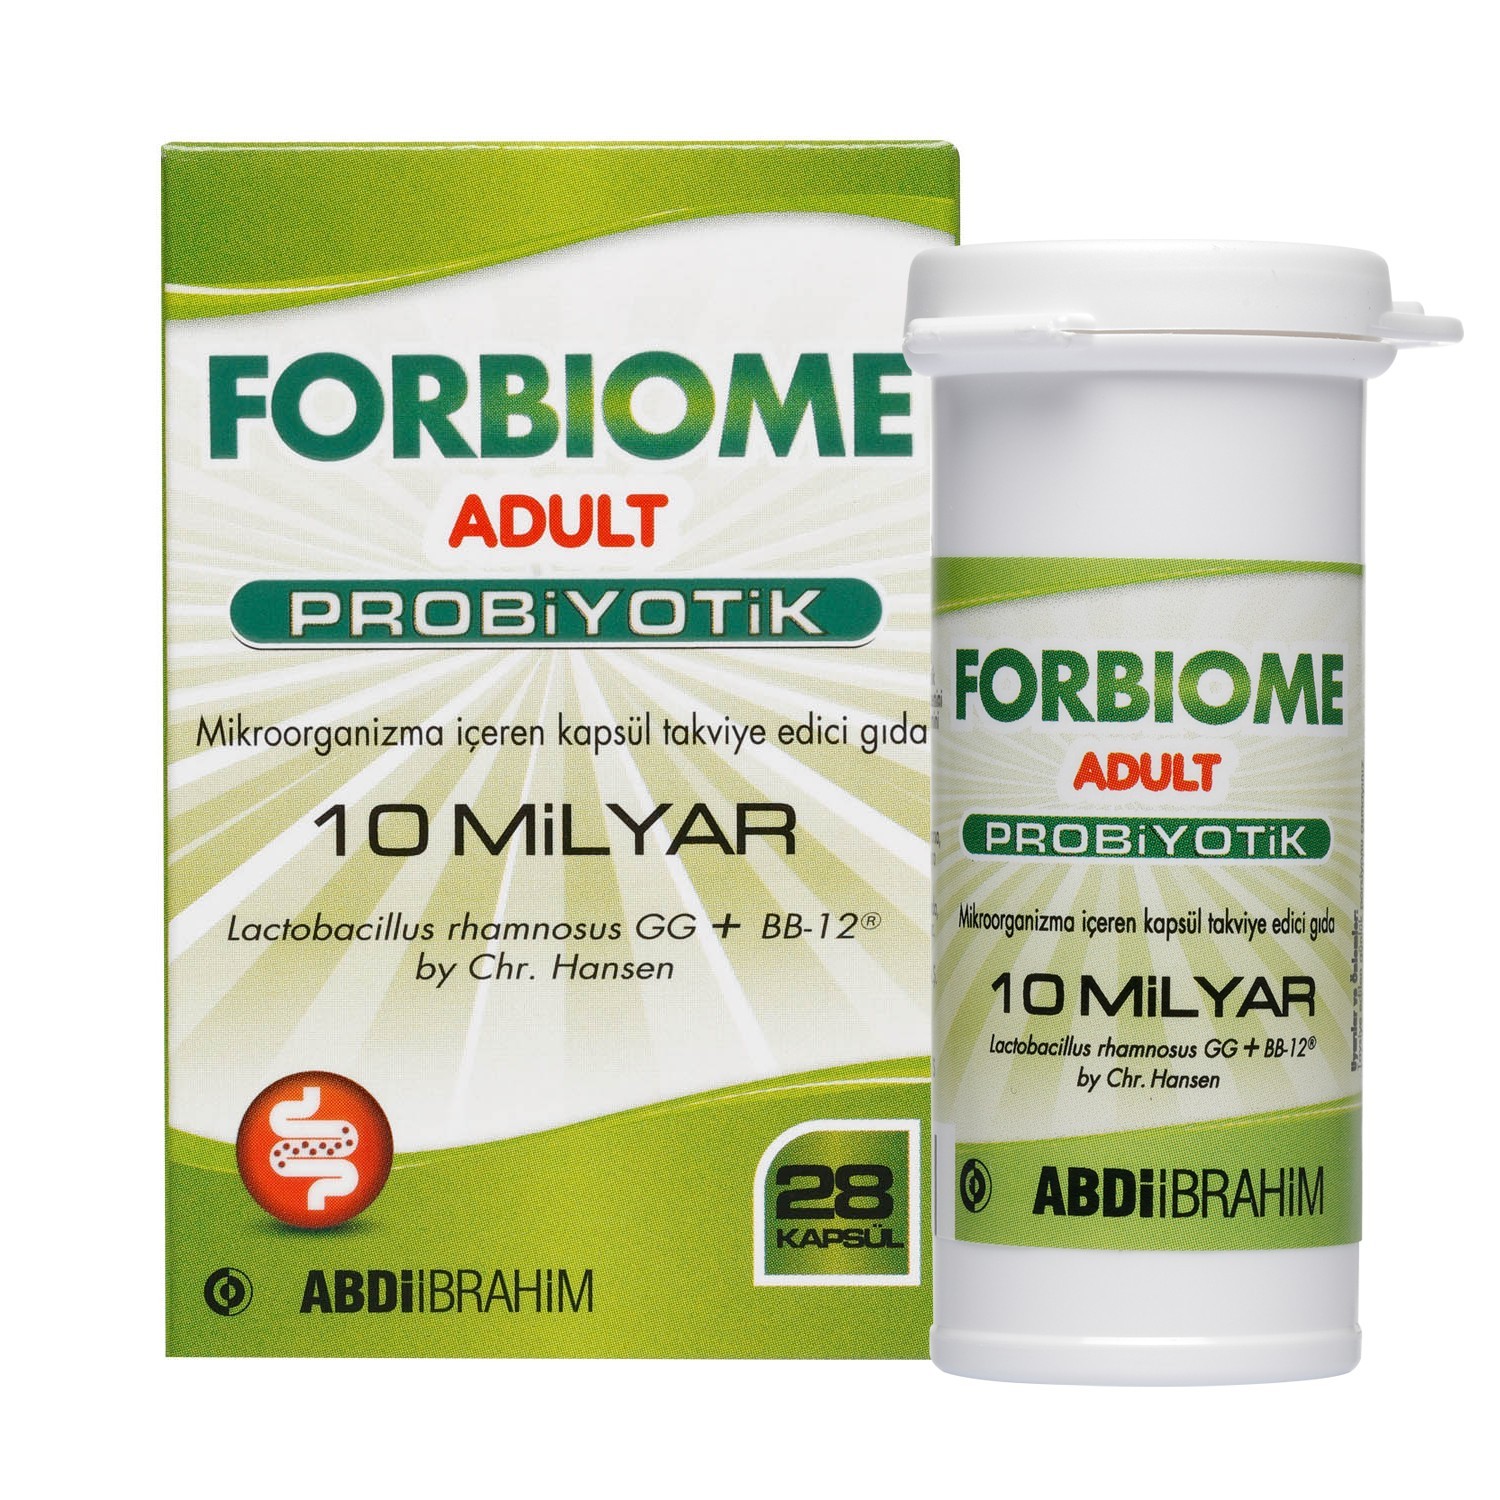 Forbiome Adult Probiyotik Takviye Edici Gıda 28 Kapsül